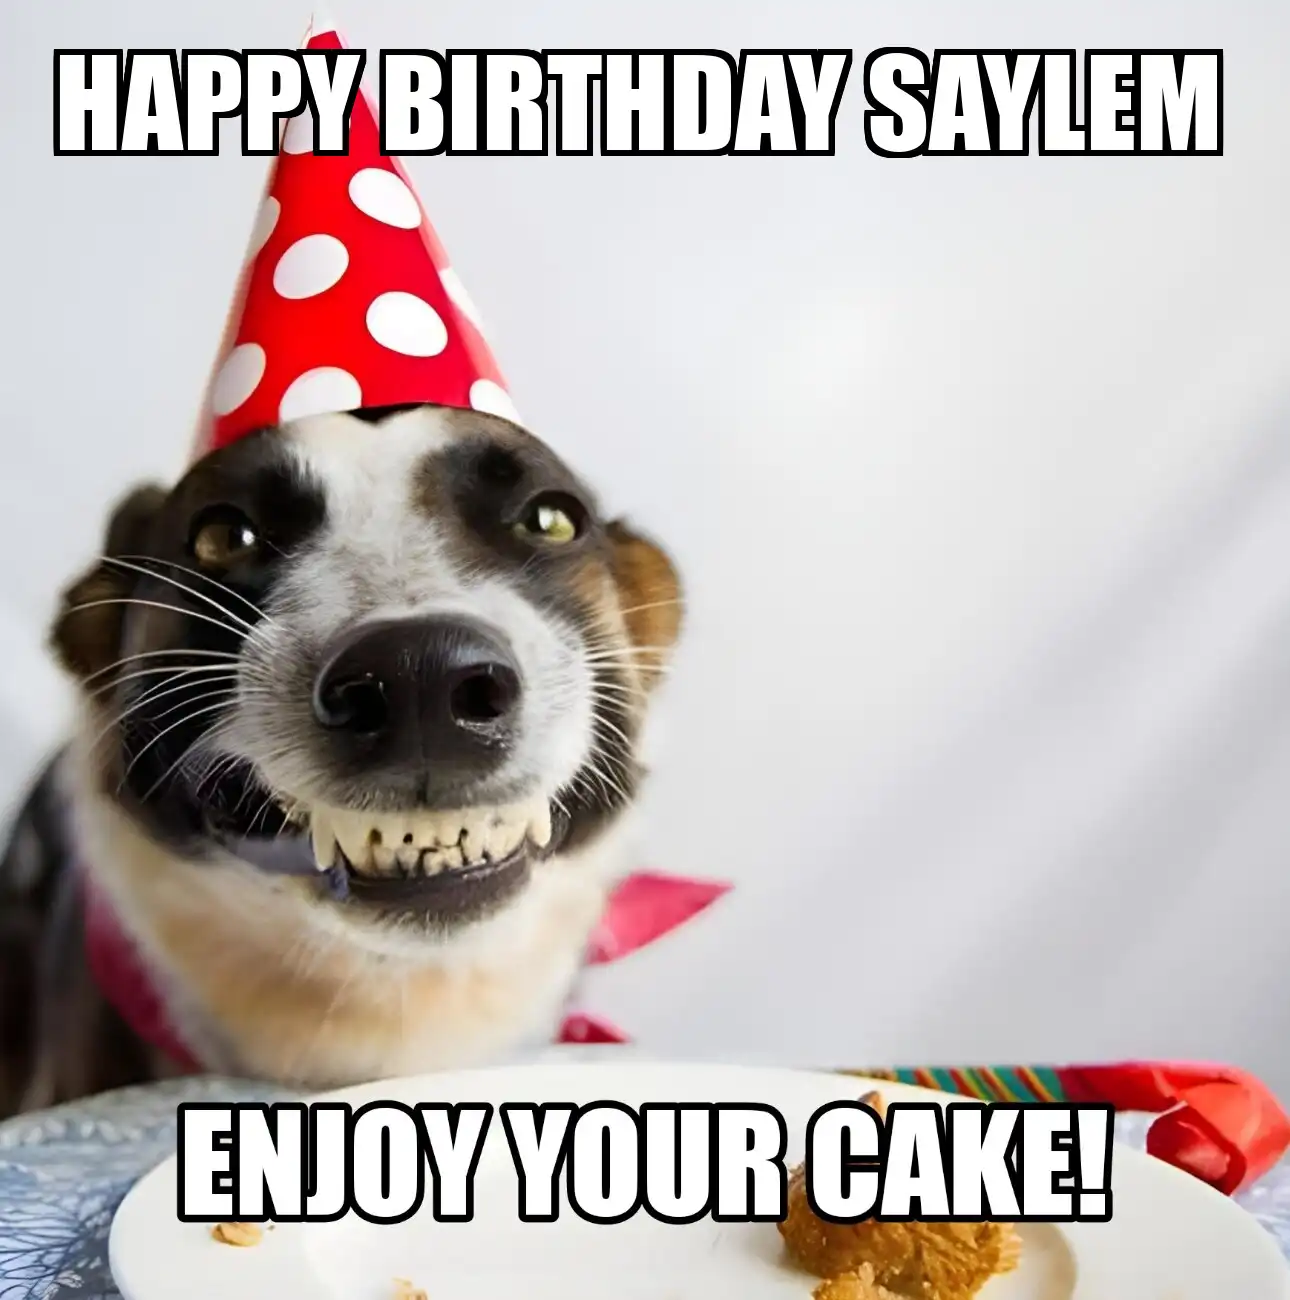 Happy Birthday Saylem Enjoy Your Cake Dog Meme